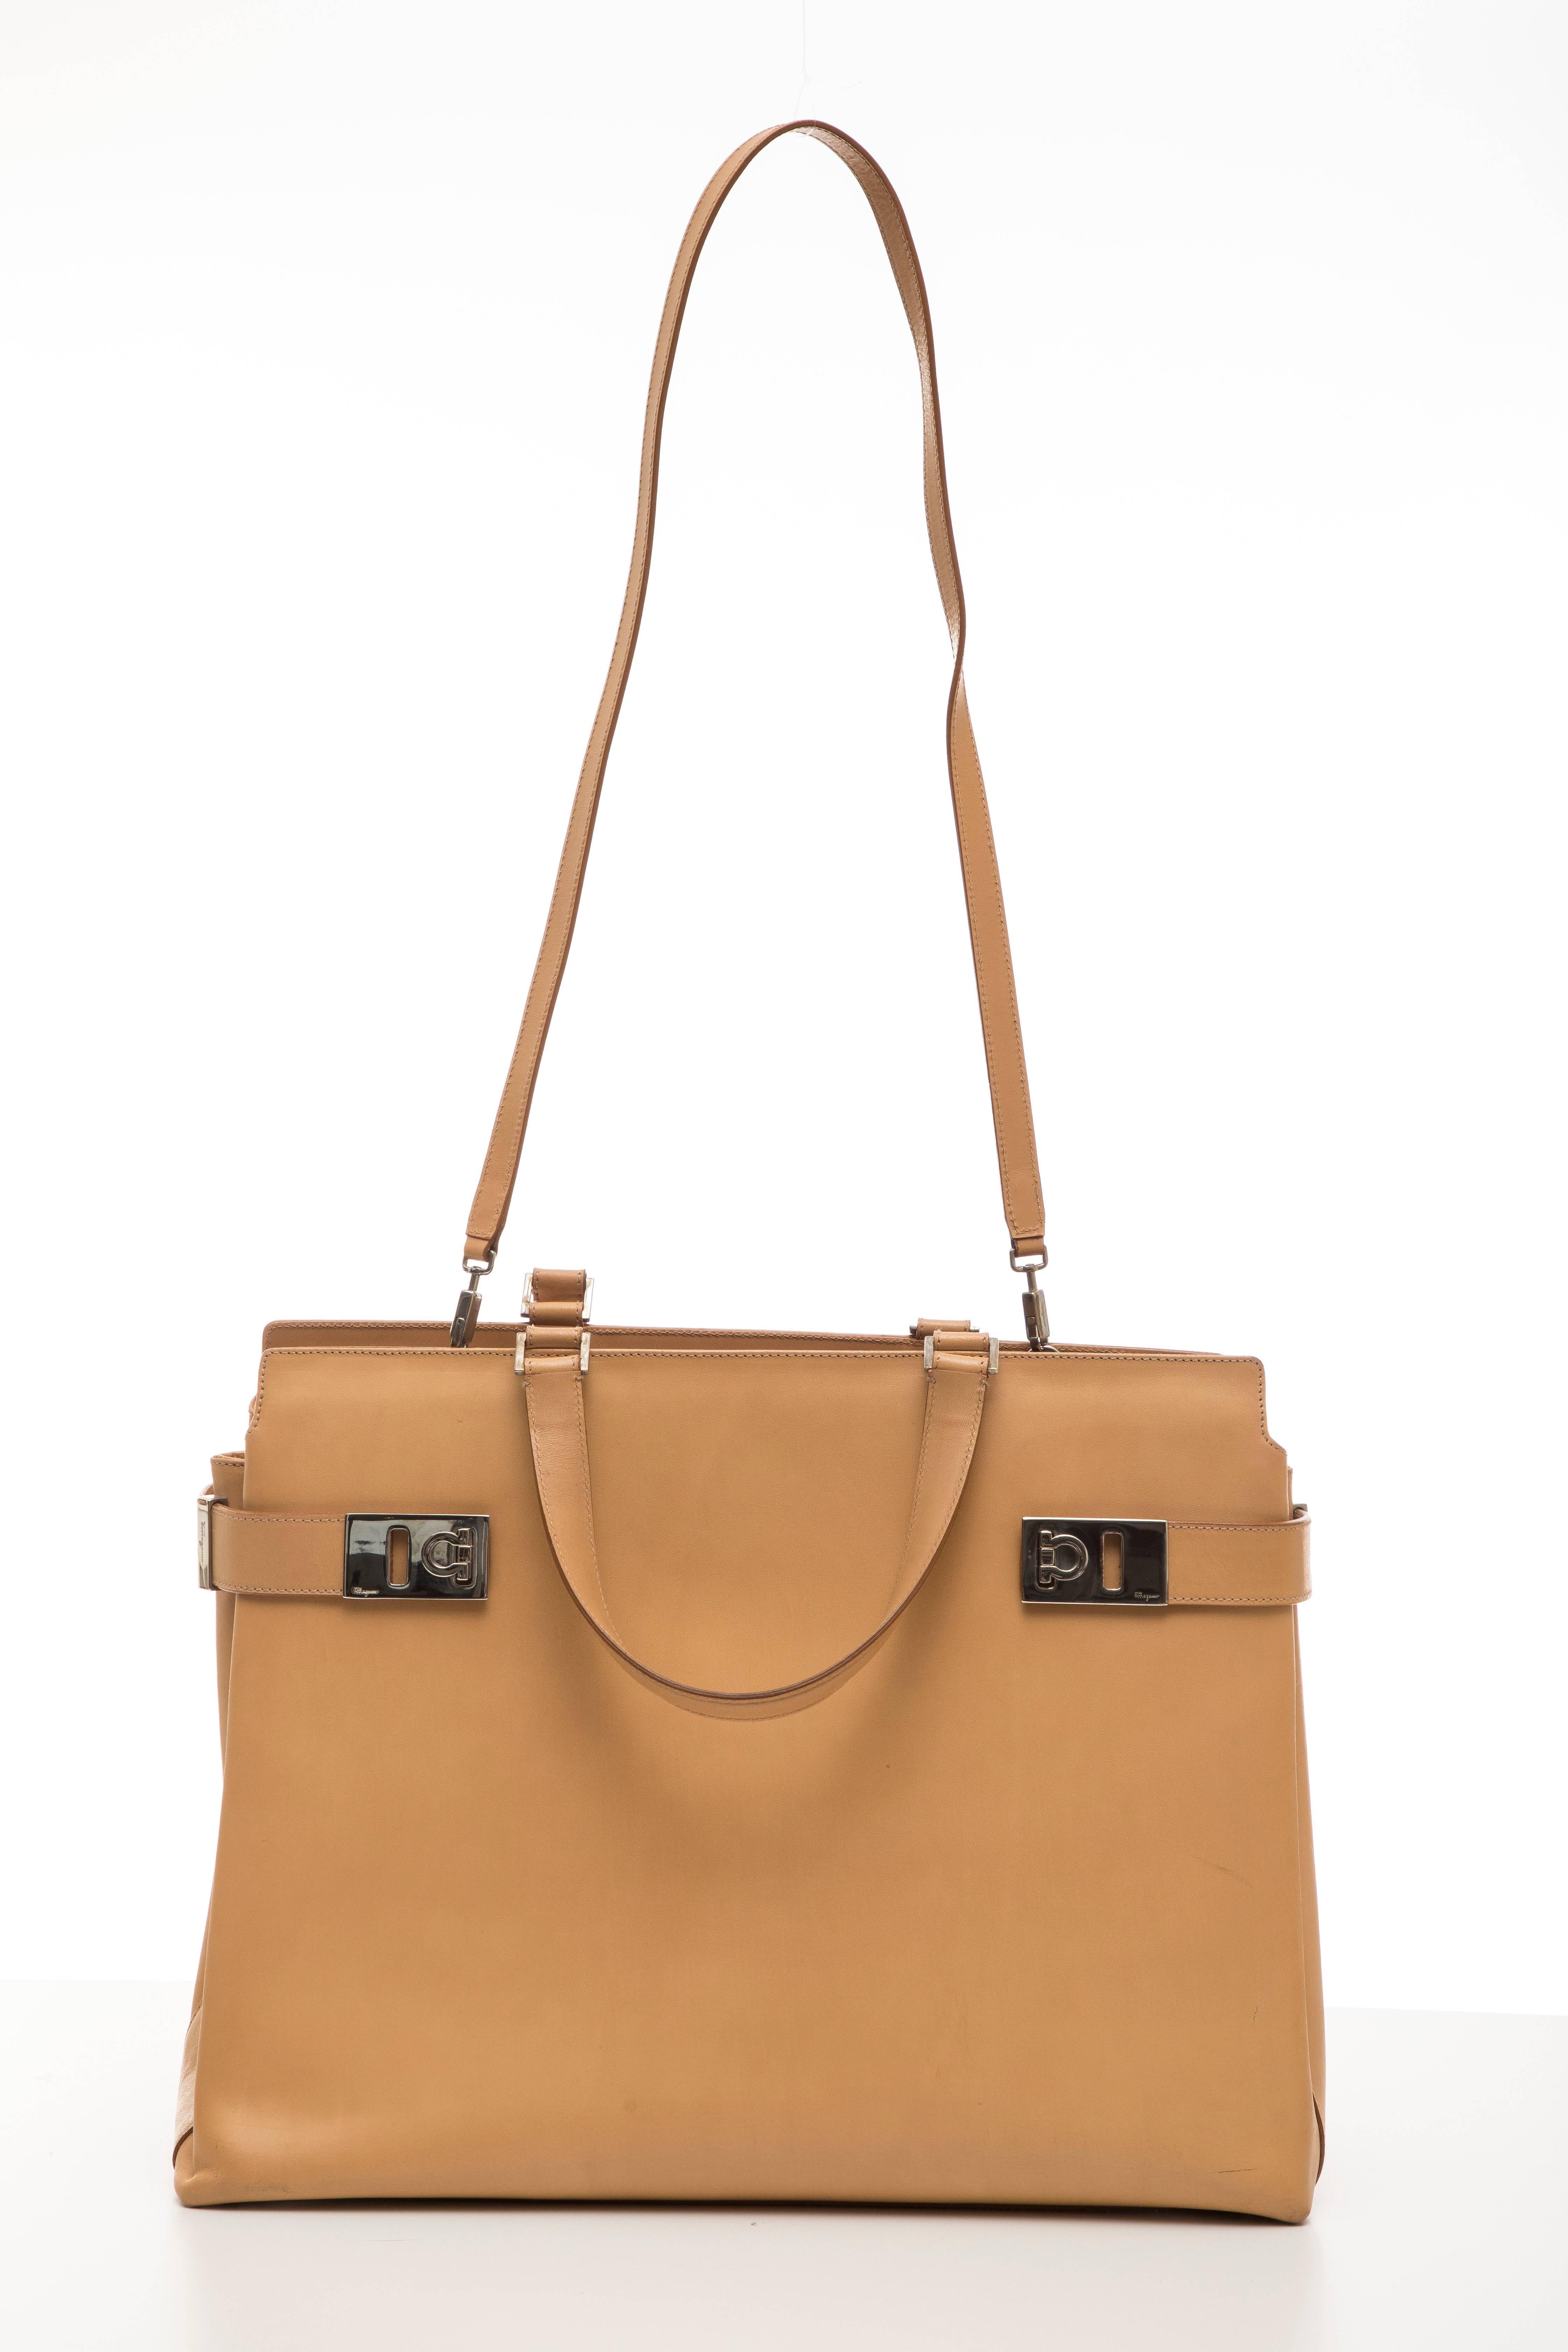 Salvatore Ferragamo Large Butterscotch Leather Top Handle Handbag For Sale 2